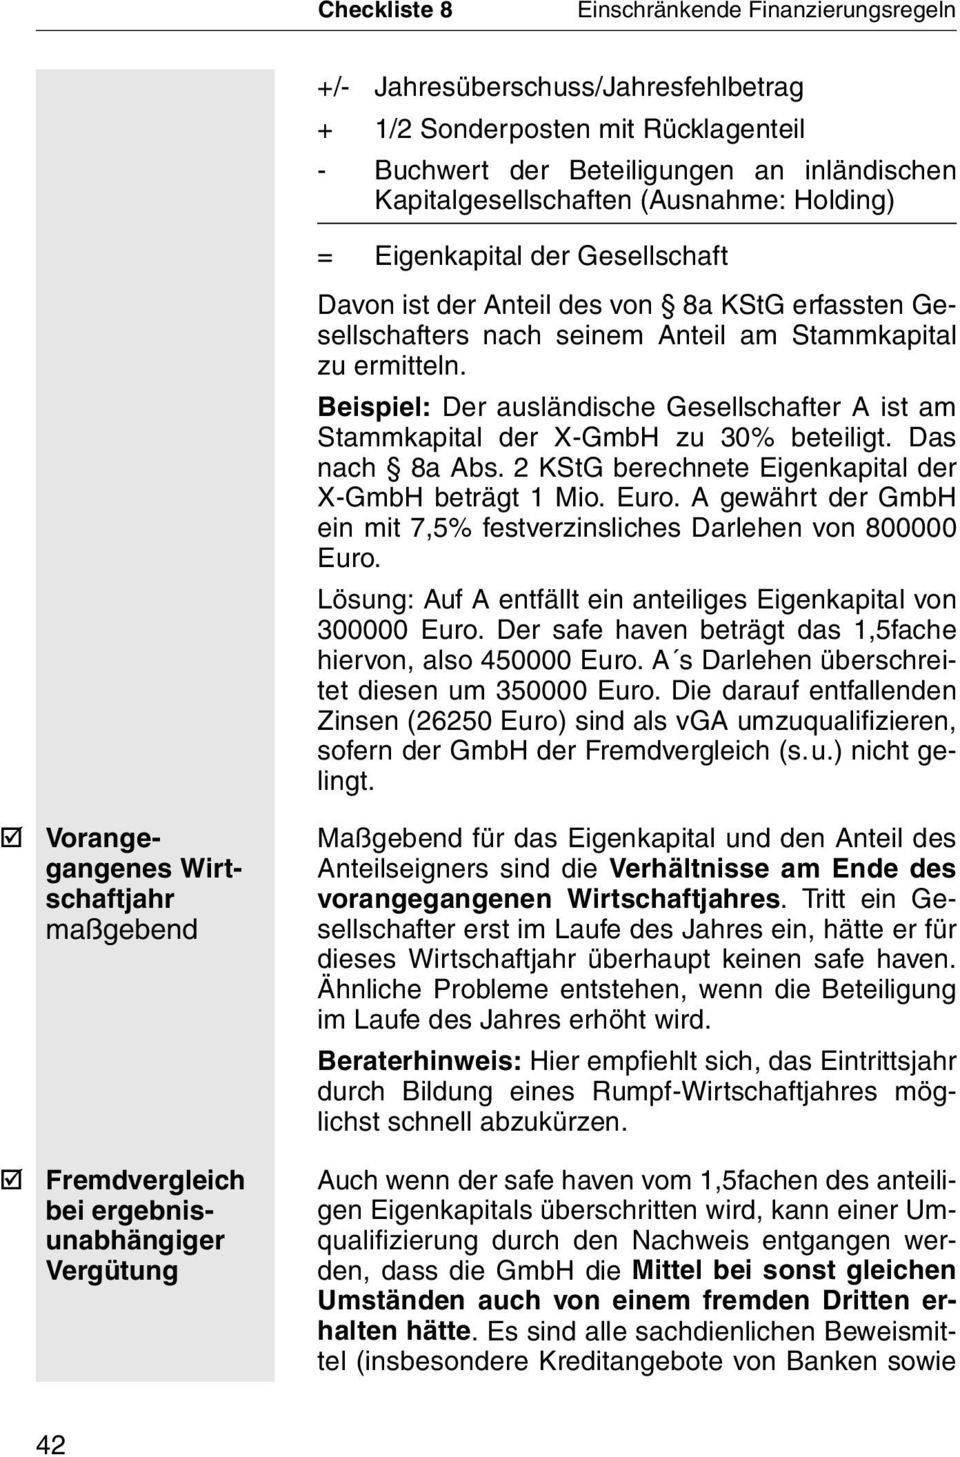 Das nach 8a Abs. 2 KStG berechnete Eigenkapital der X-GmbH beträgt 1 Mio. Euro. A gewährt der GmbH ein mit 7,5% festverzinsliches Darlehen von 800000 Euro.